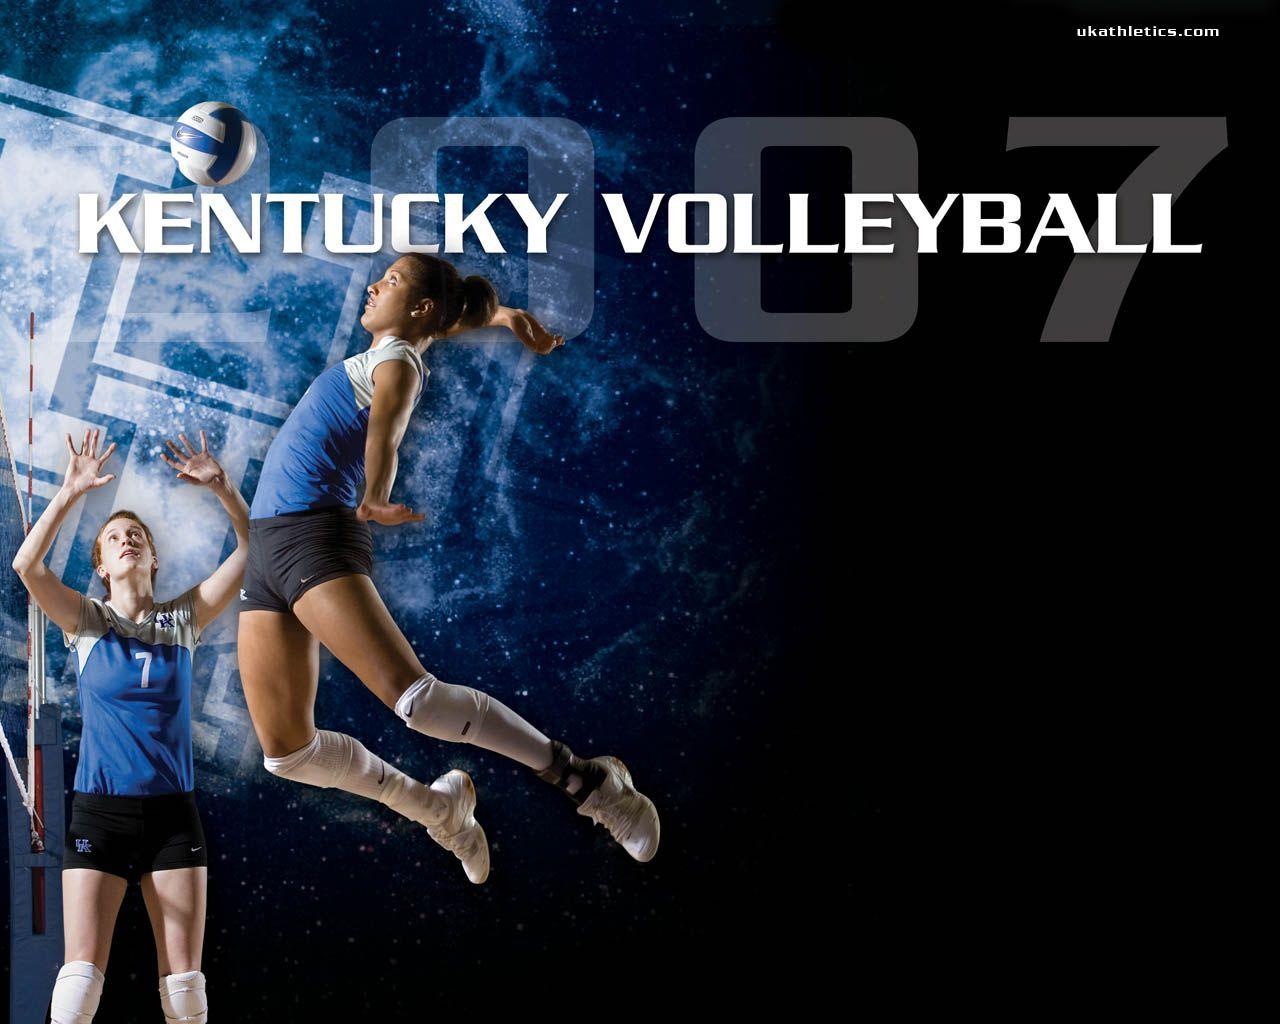 Volleyball Net Wallpaper